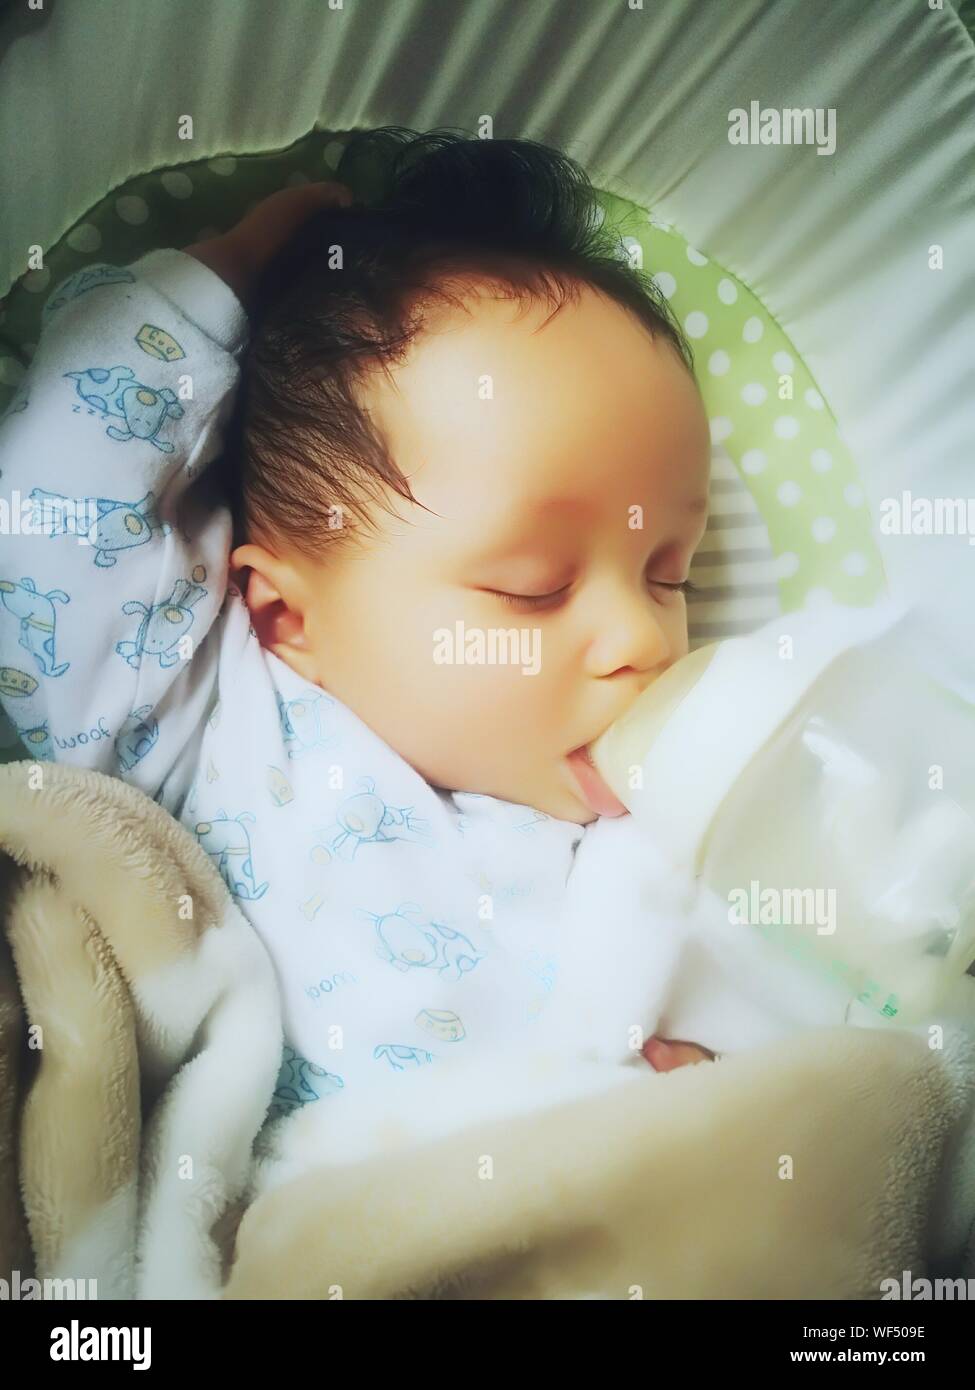 Close-up Baby schläft mit Milch Flasche im Mund zu Hause Stockfotografie -  Alamy